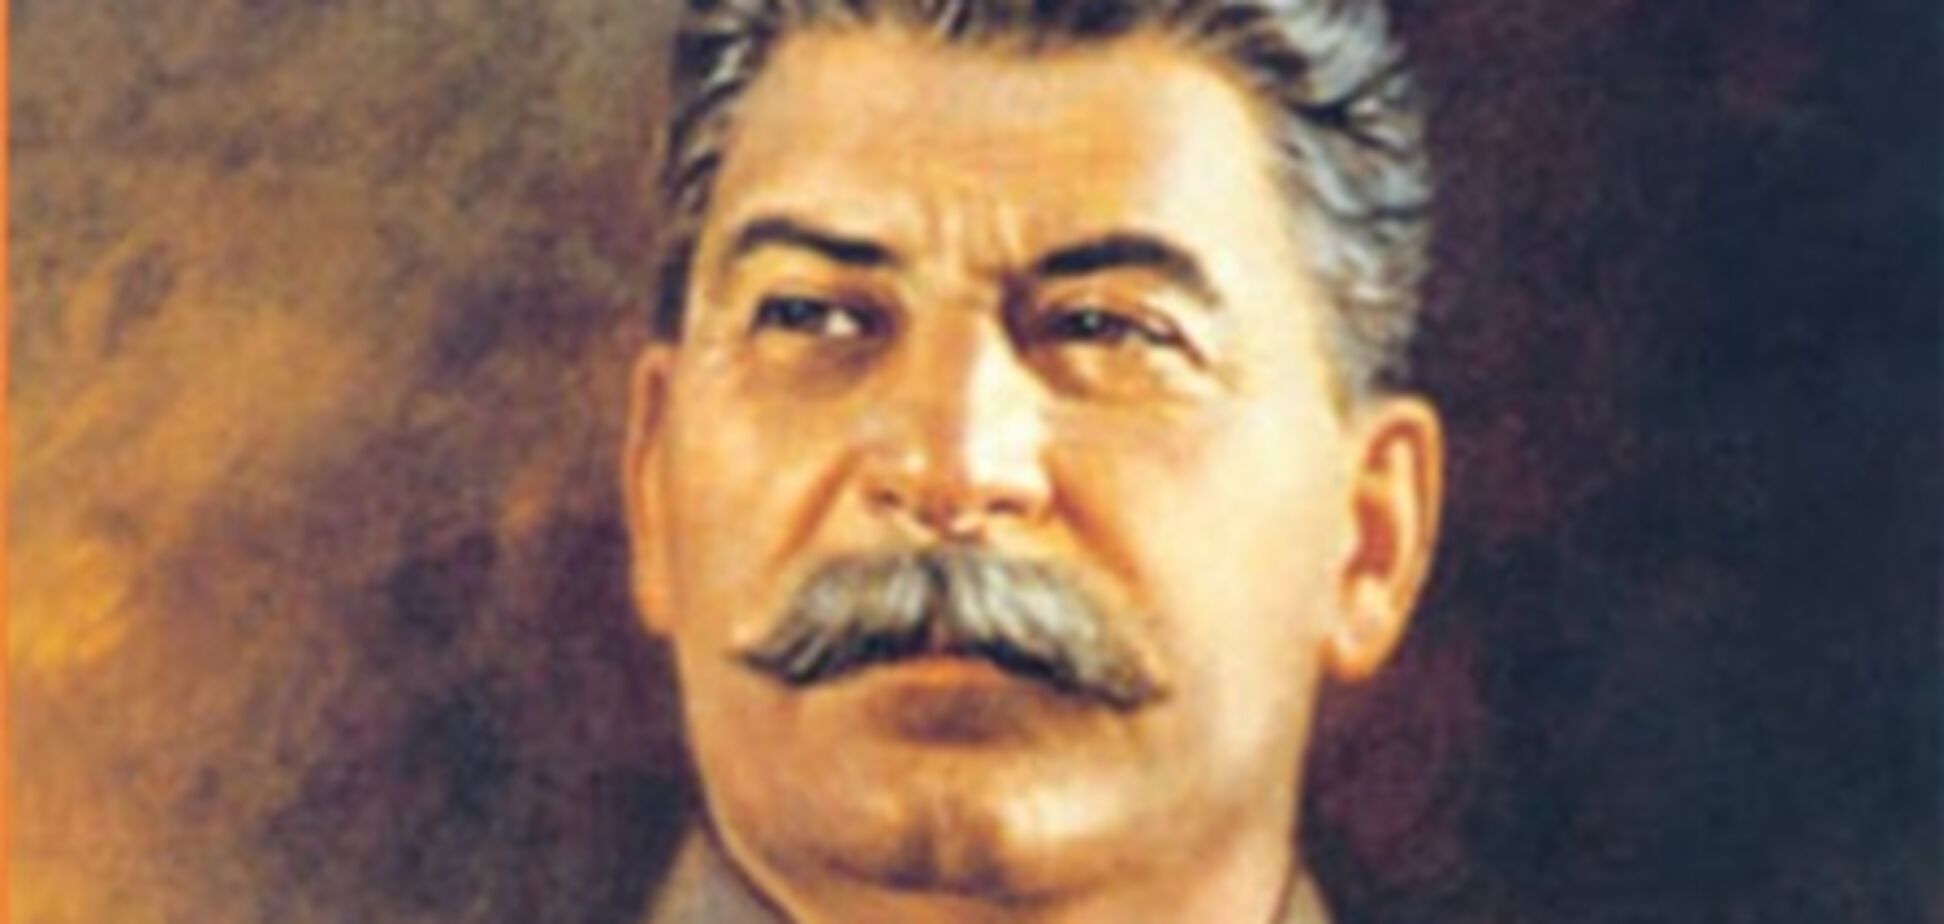 Мудрым руководителем назвали Сталина 34% украинцев - КМИС